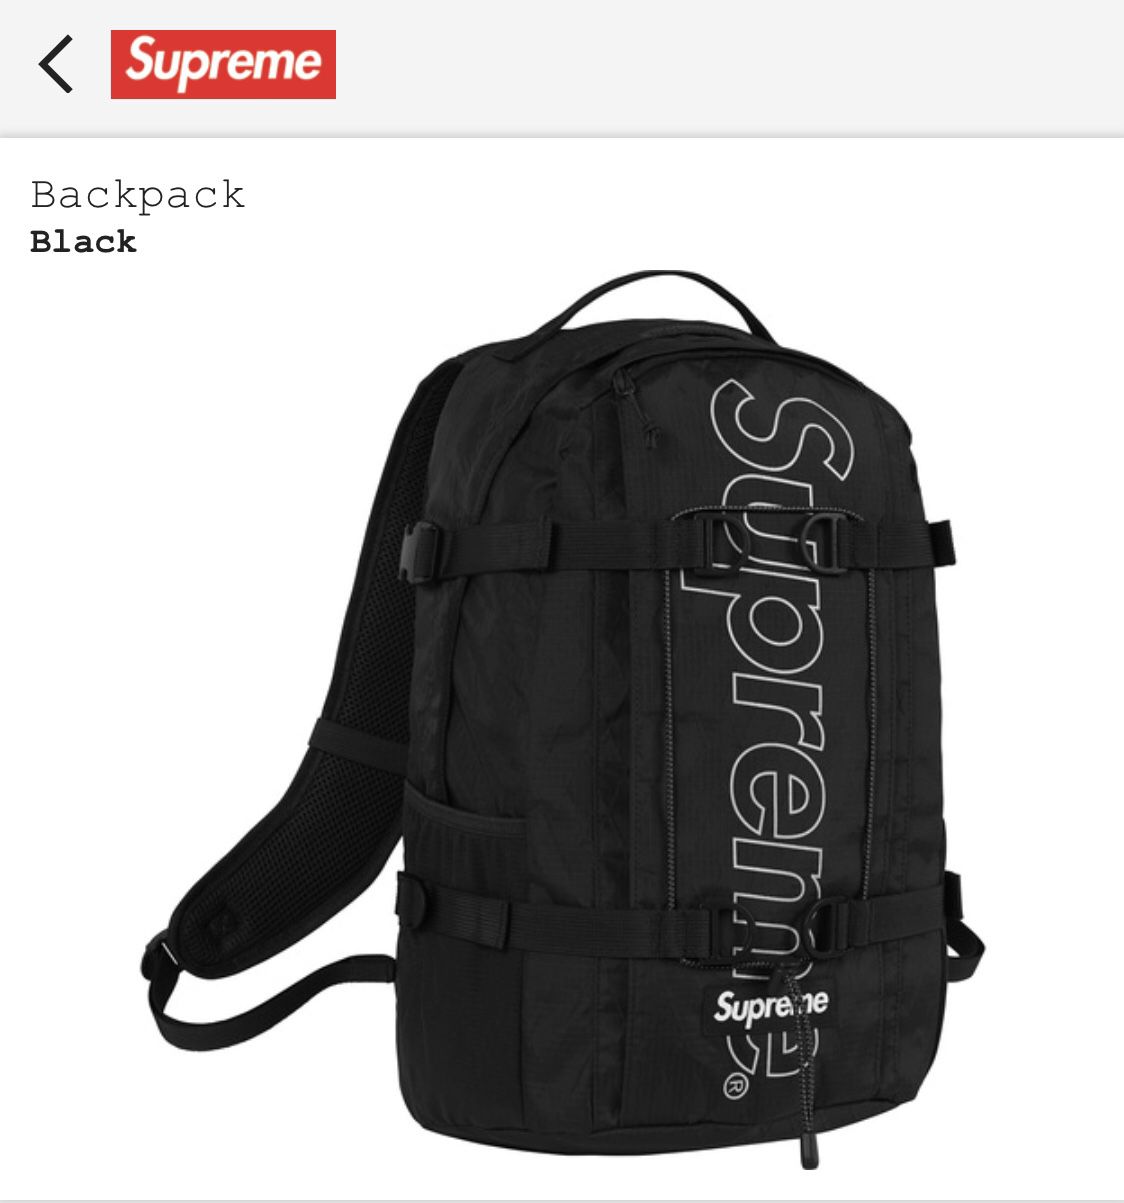 Supreme backpack black